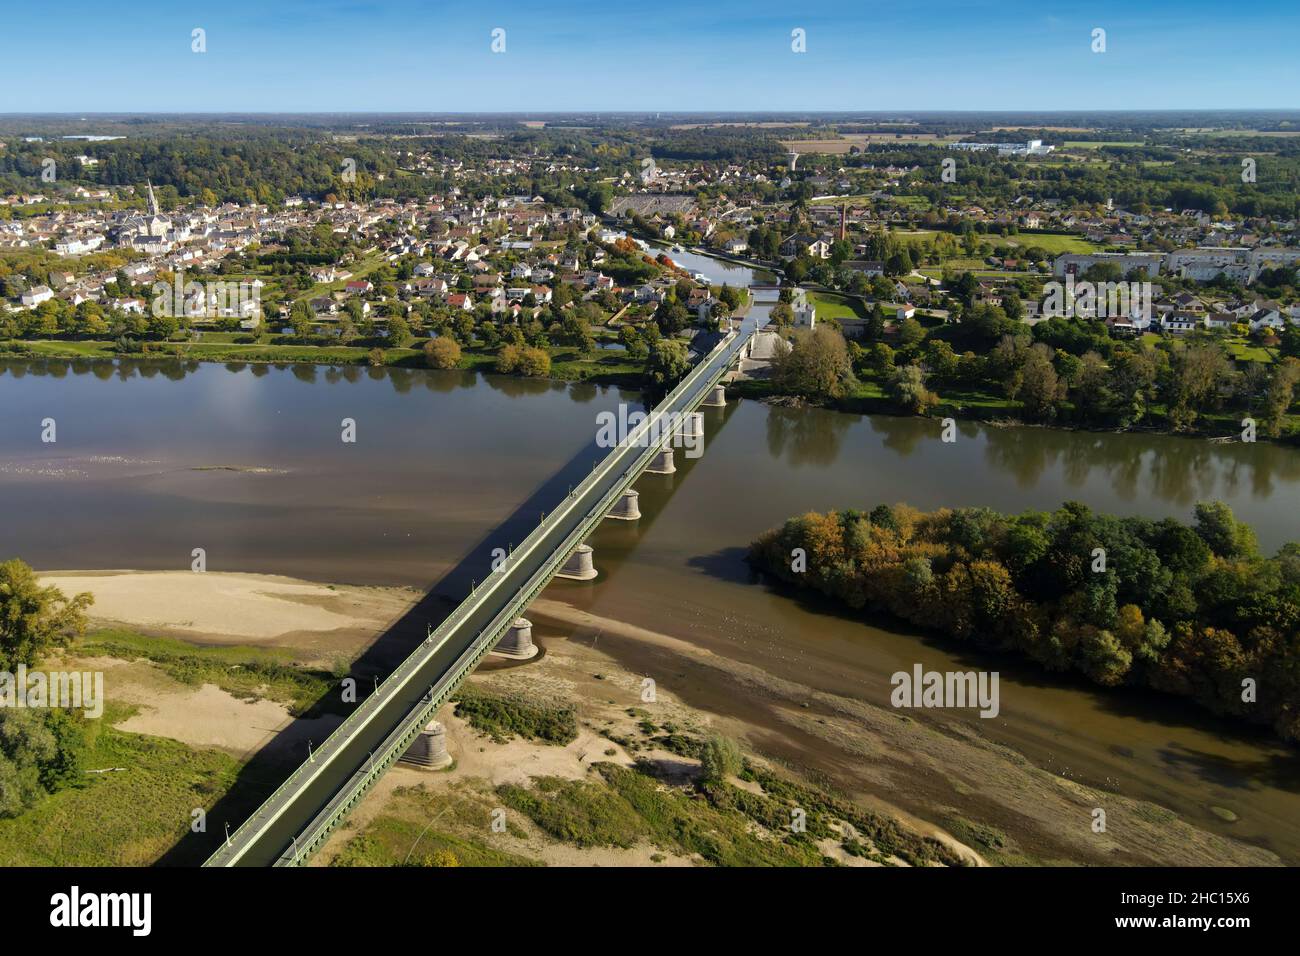 Vista aérea de la ciidad francesa Briare y el famoso acueducto que lleva el canal sobre el río Loira en su viaje al Sena. Foto de stock